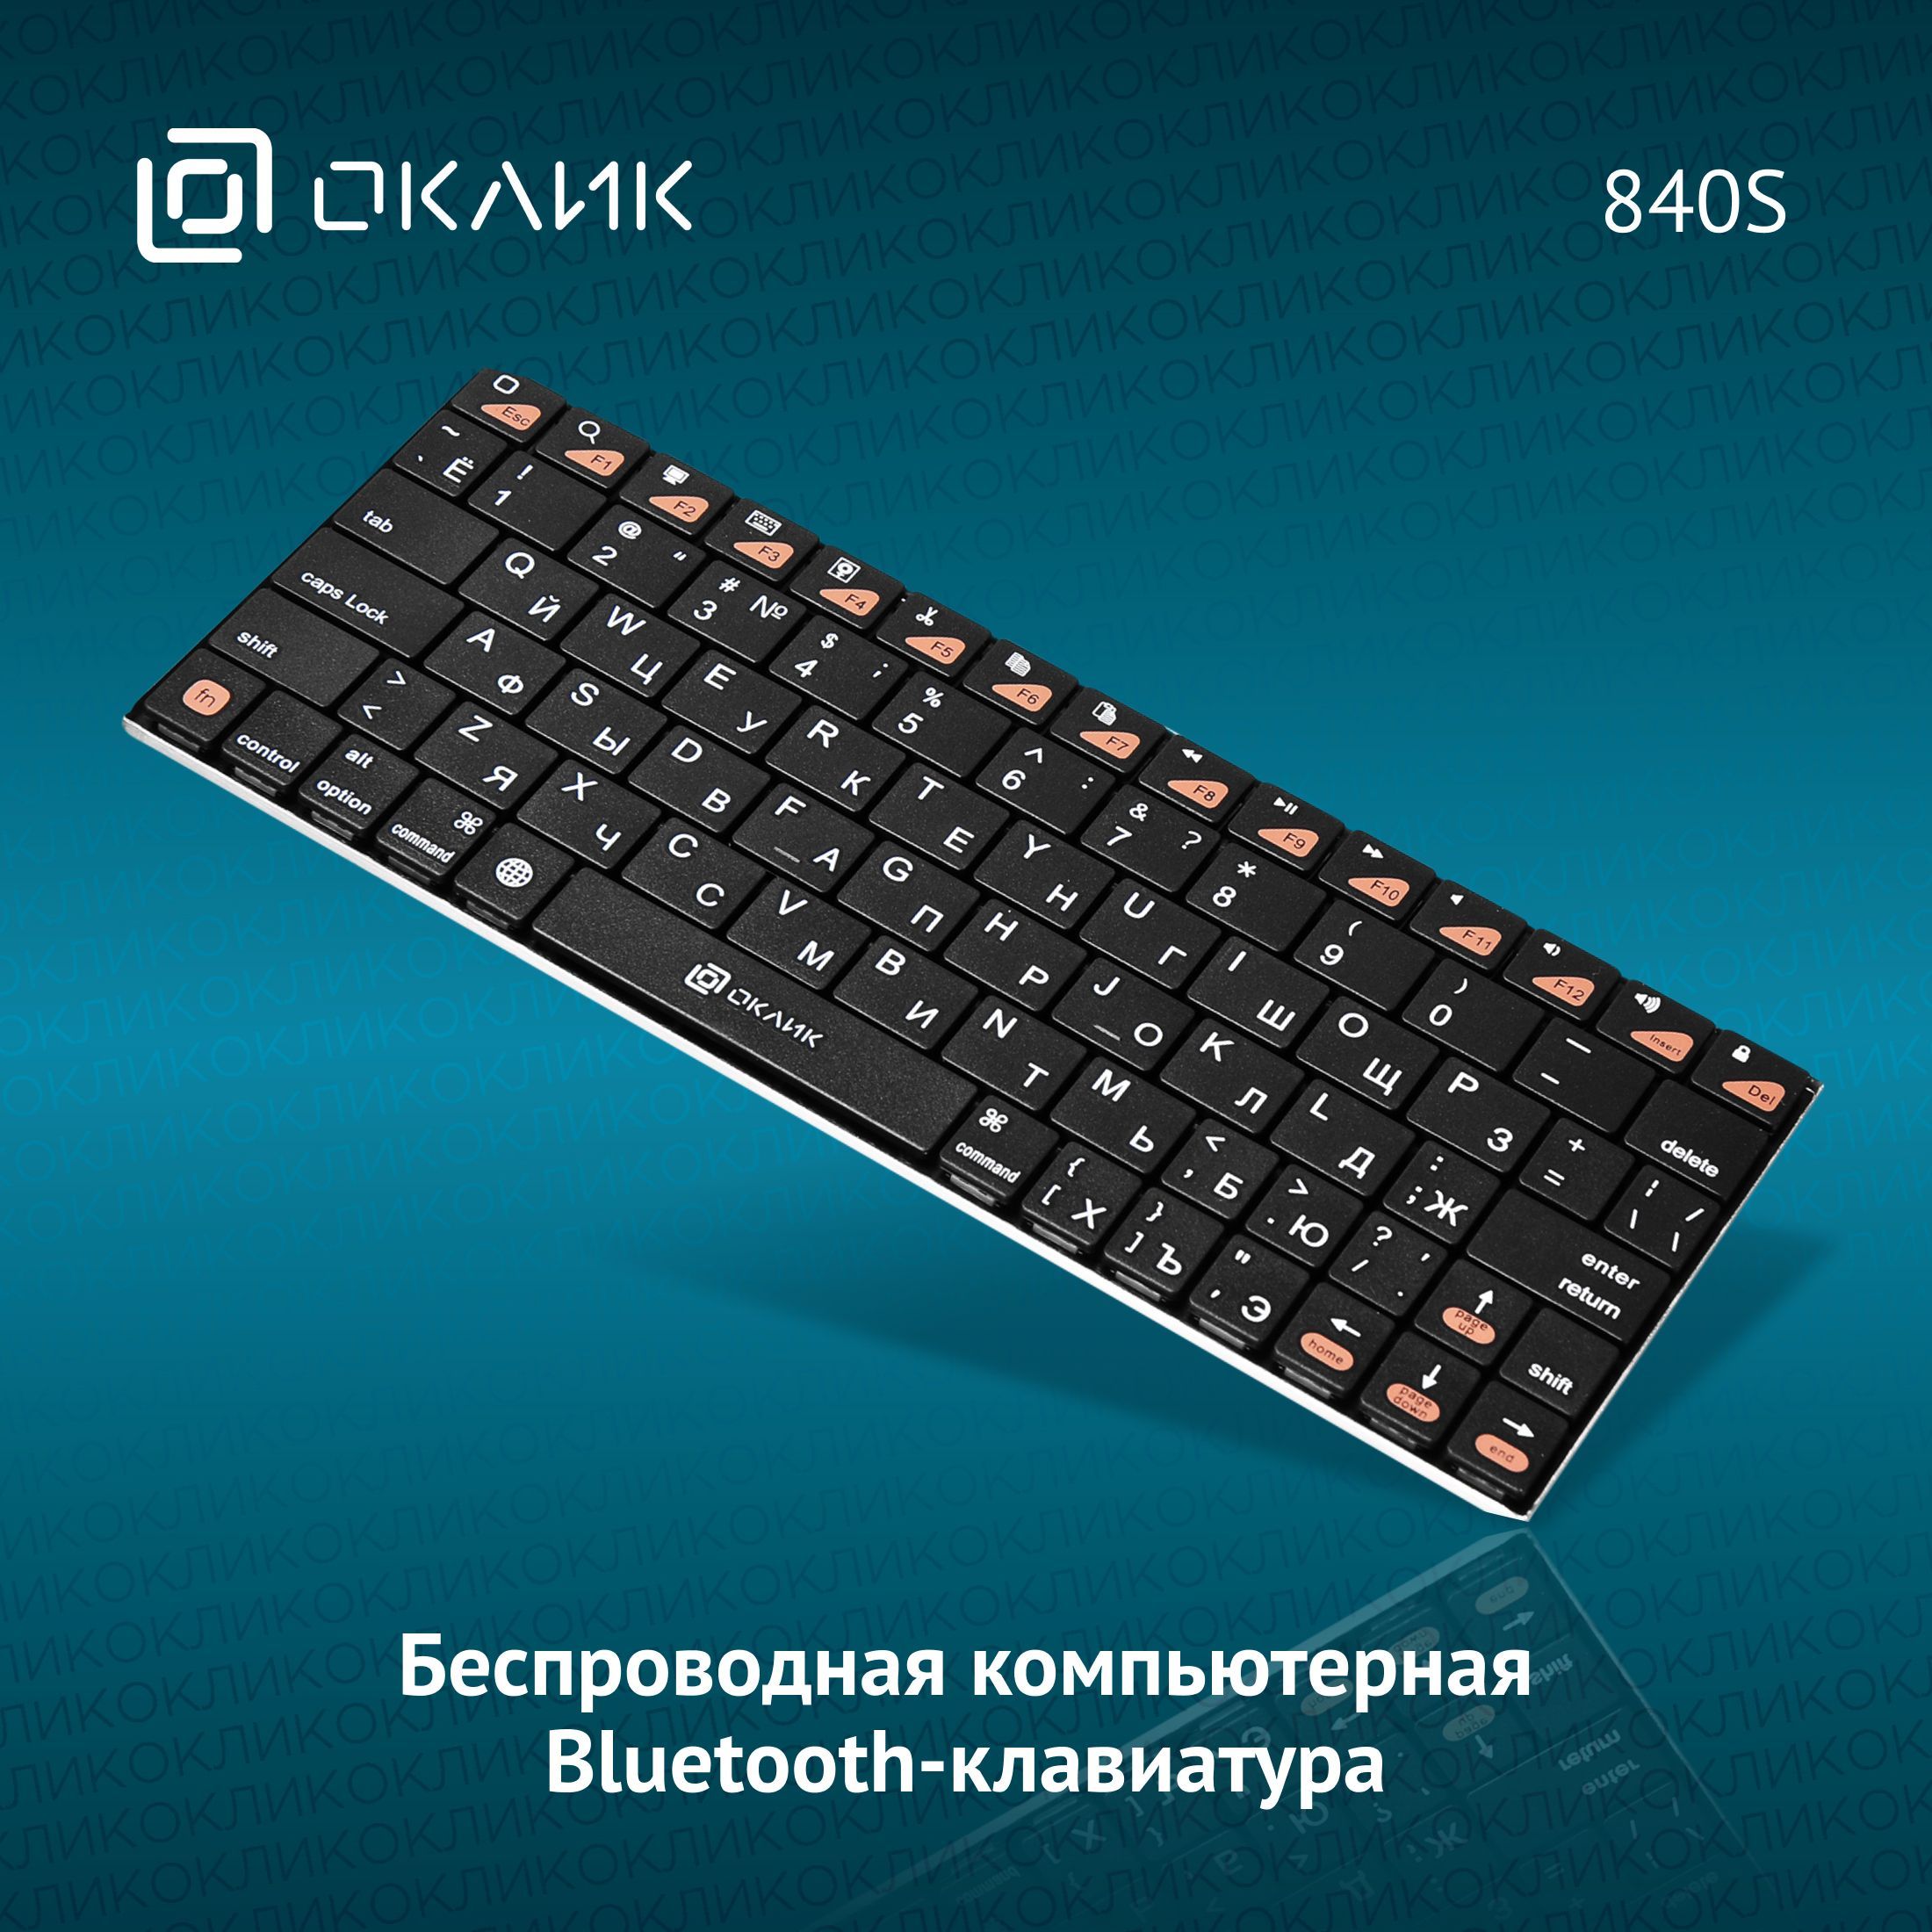 КлавиатурадлякомпьютераОклик840Sтонкая,мембранная,беспроводная,черная